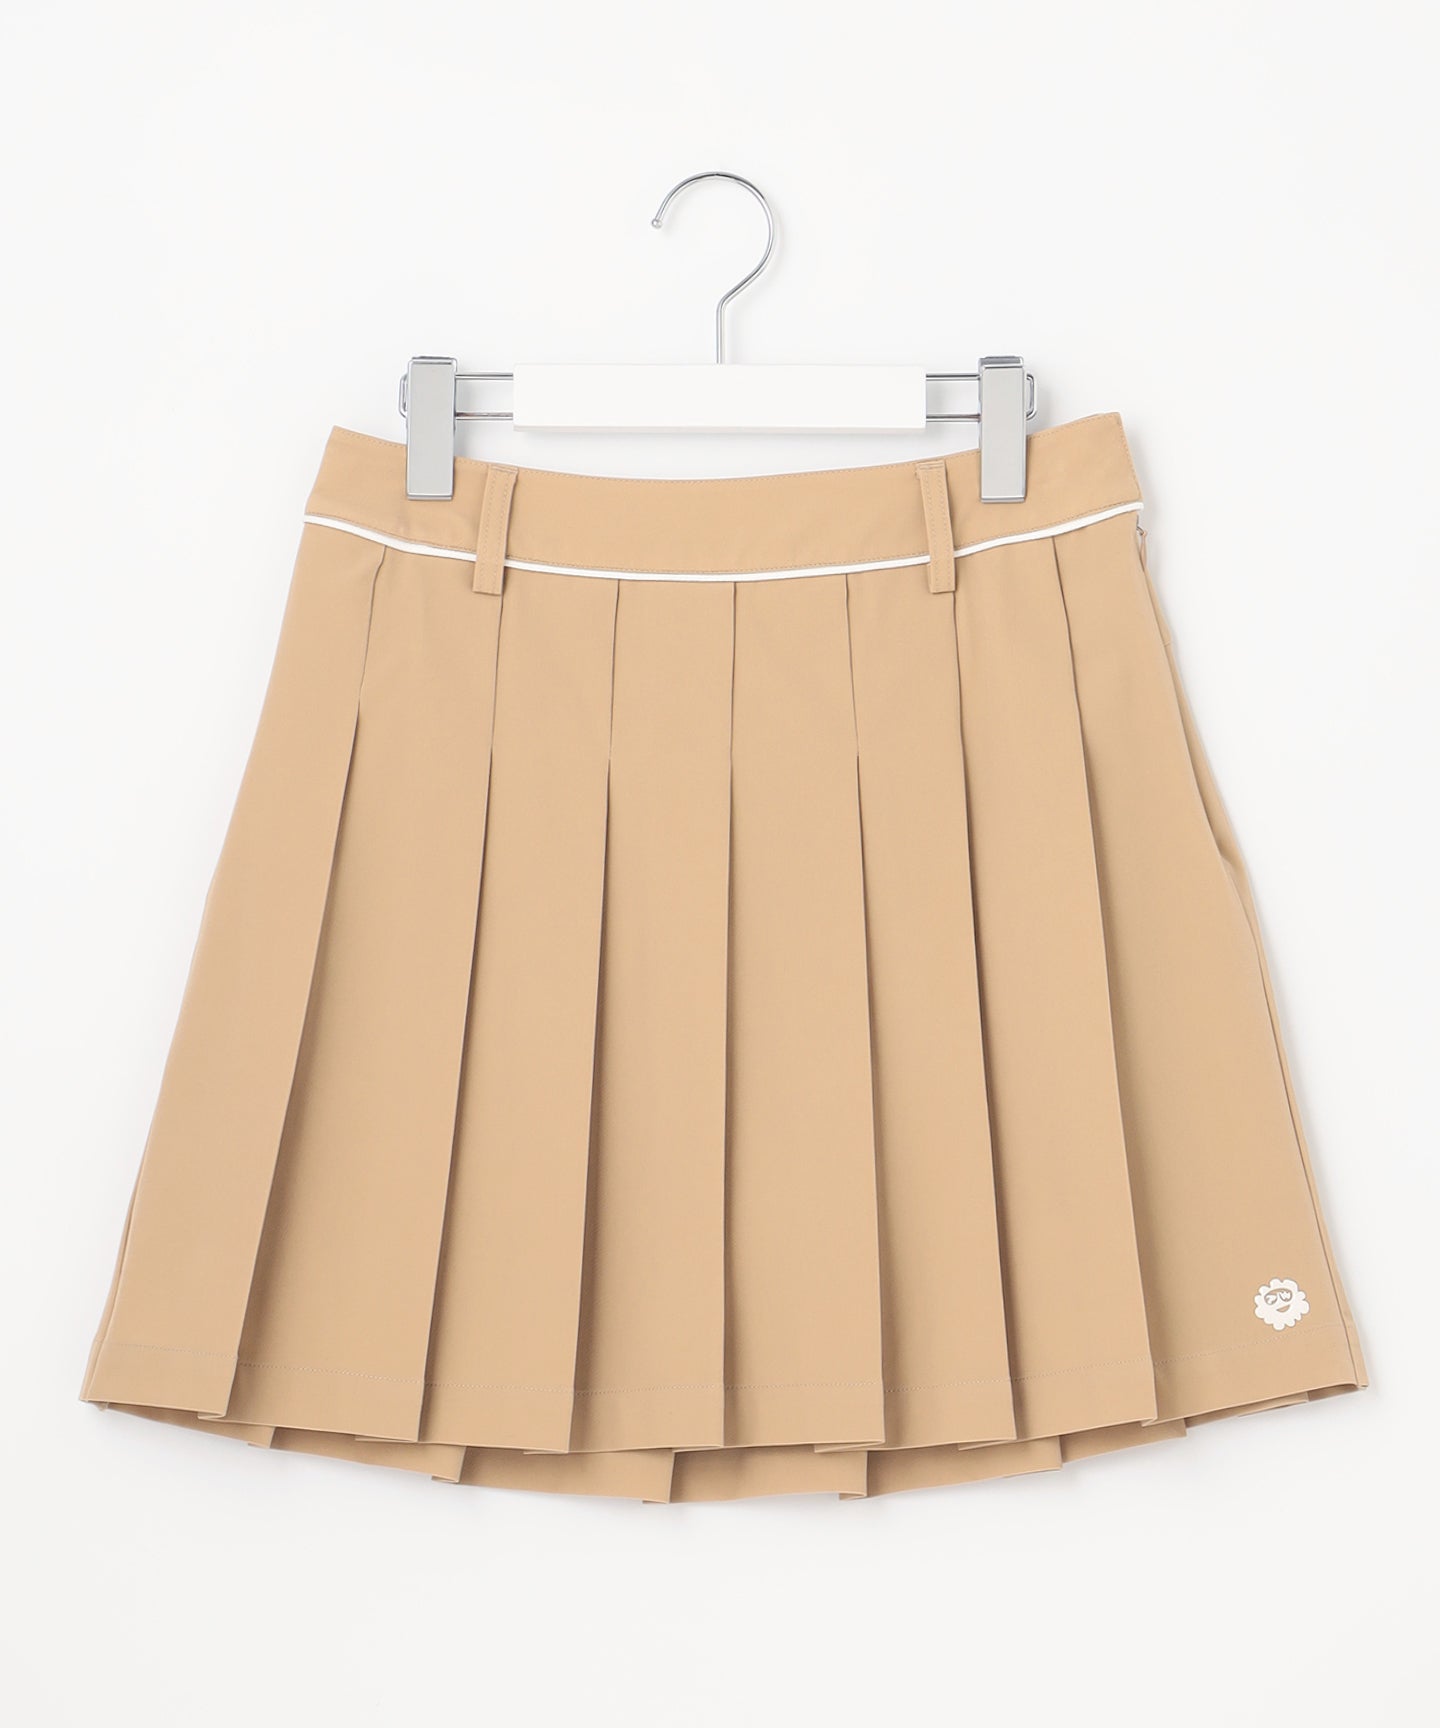 rokupleats skirt